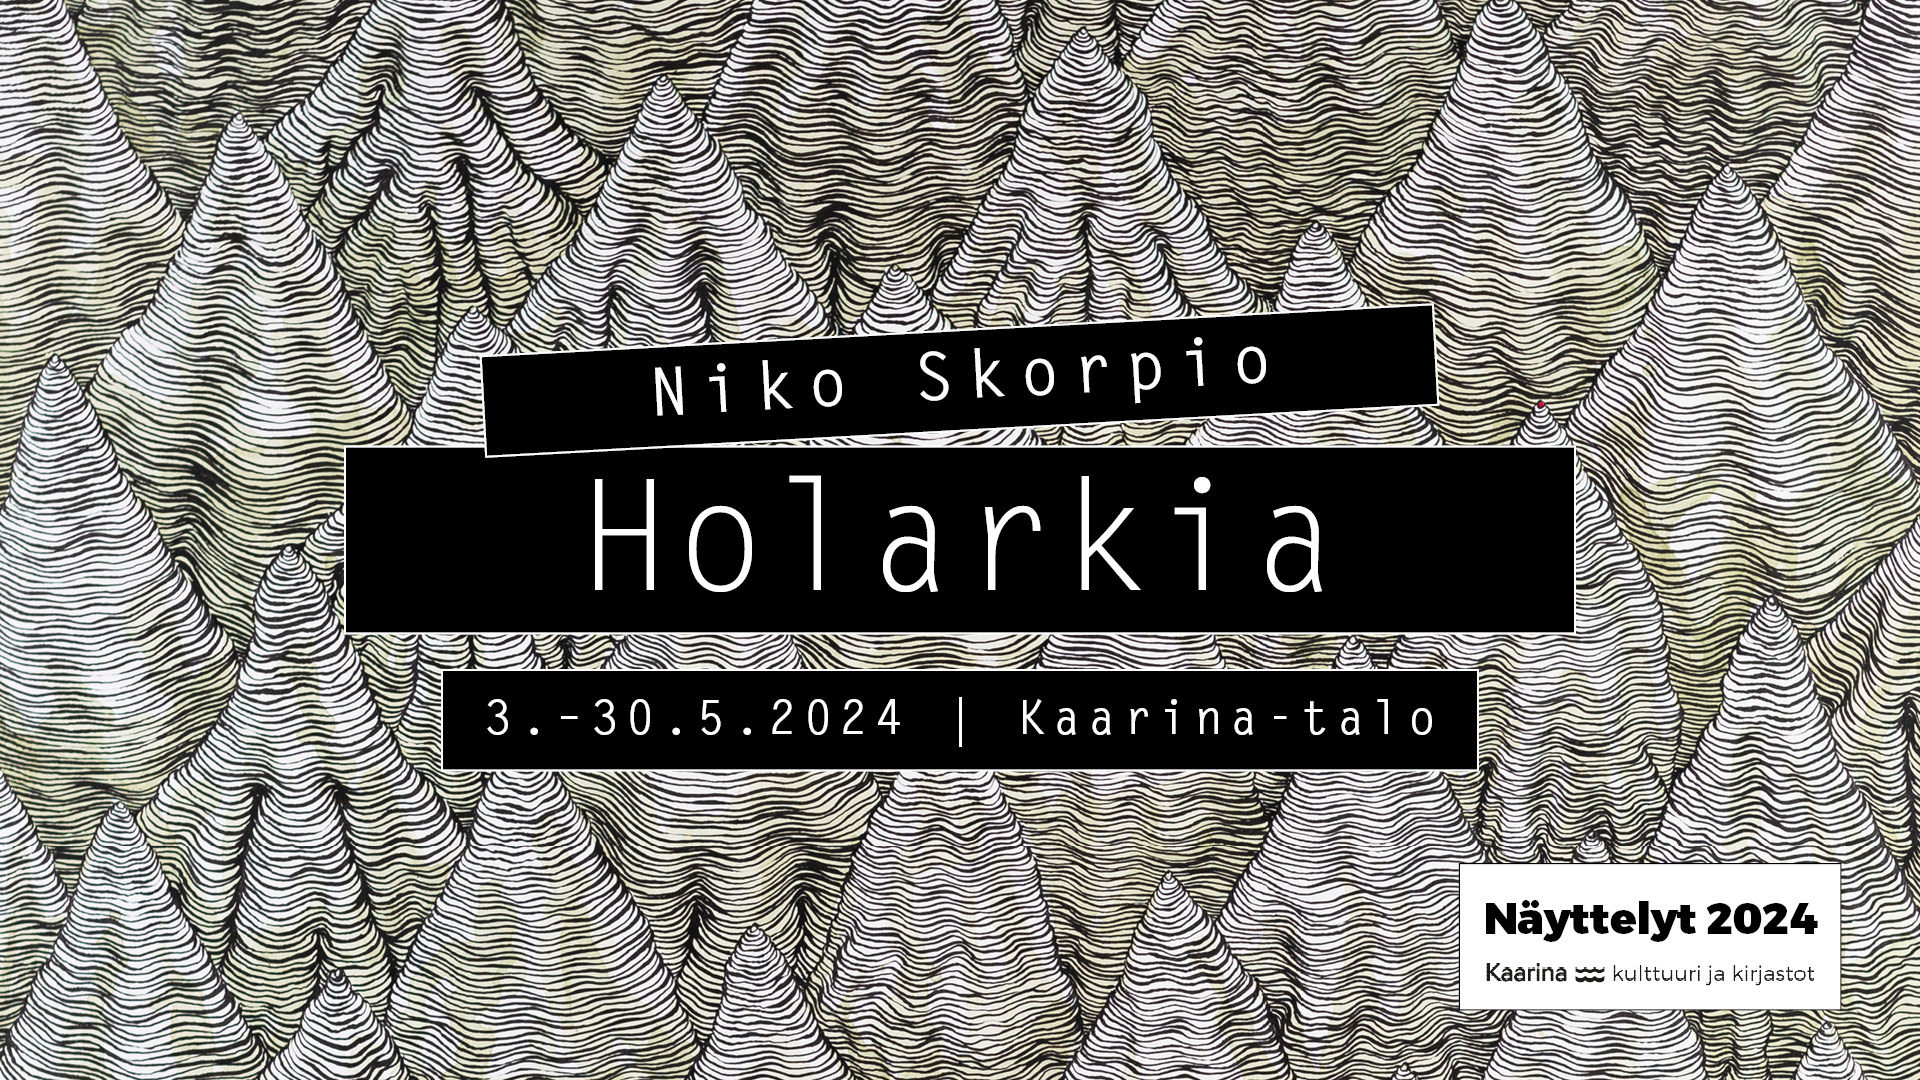 Niko Skorpio - Holarkia - Kaarina-talo 2024